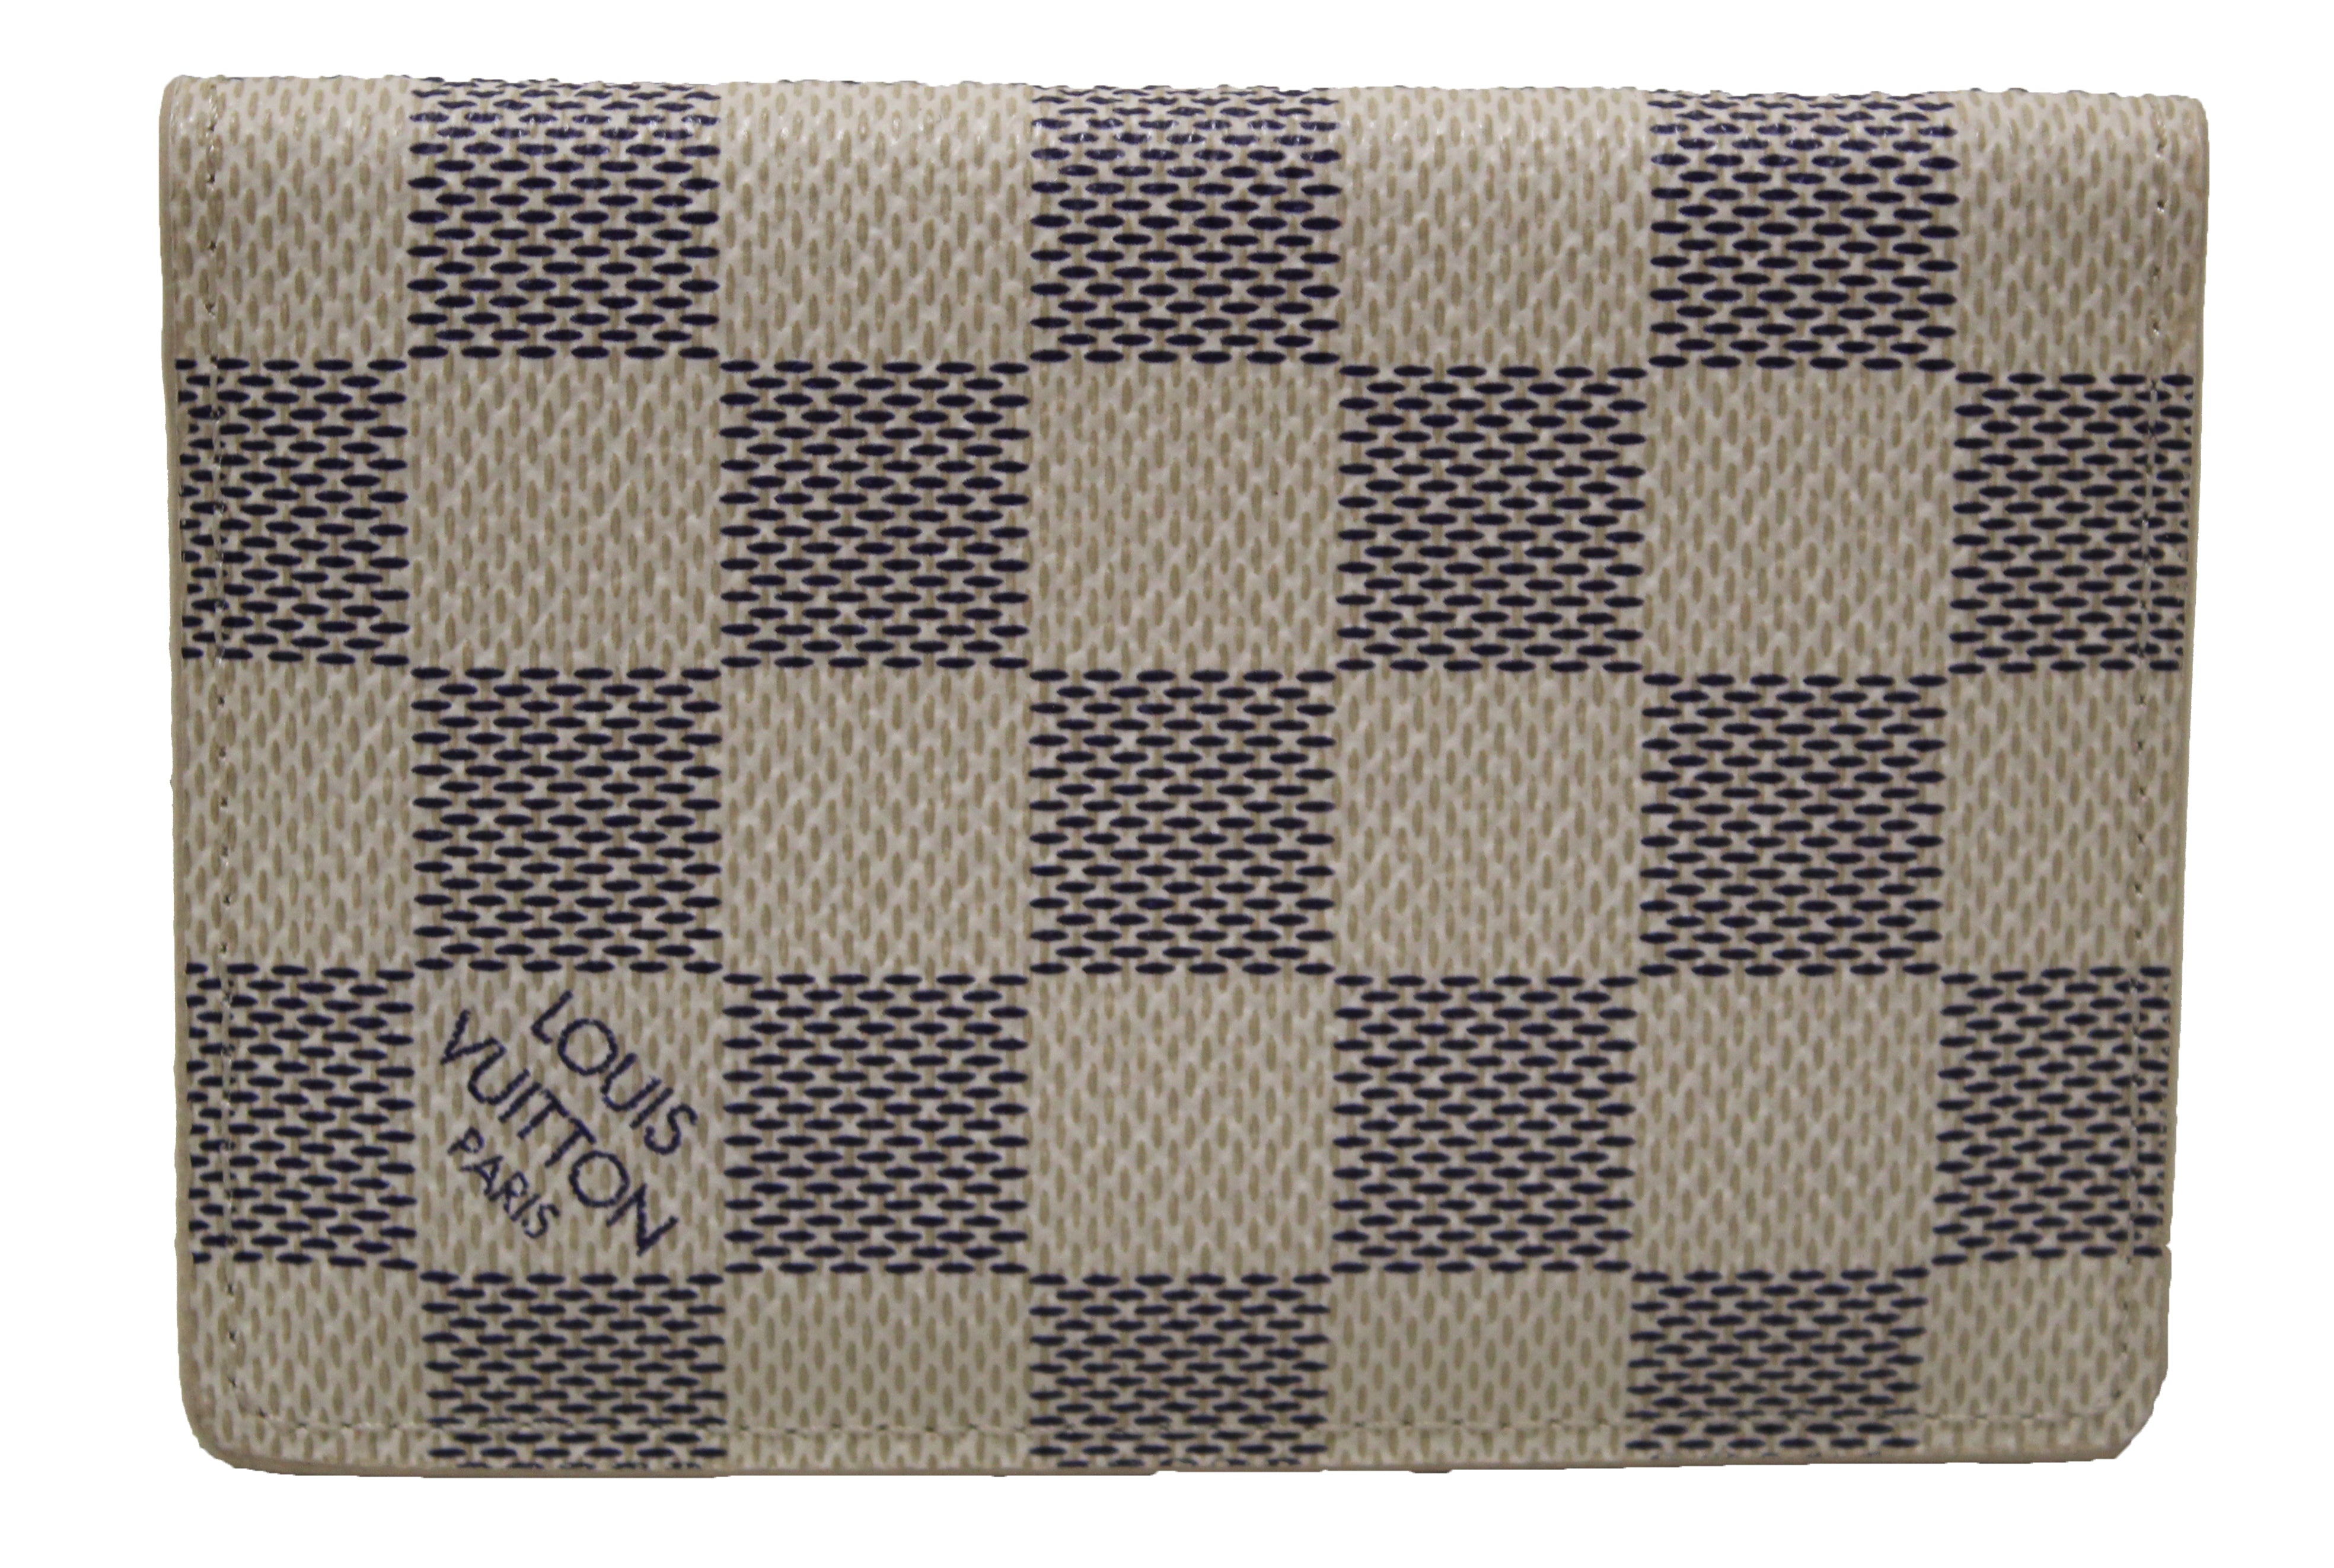 Authentic Louis Vuitton Damier Azur Canvas Pocket Organizer Card